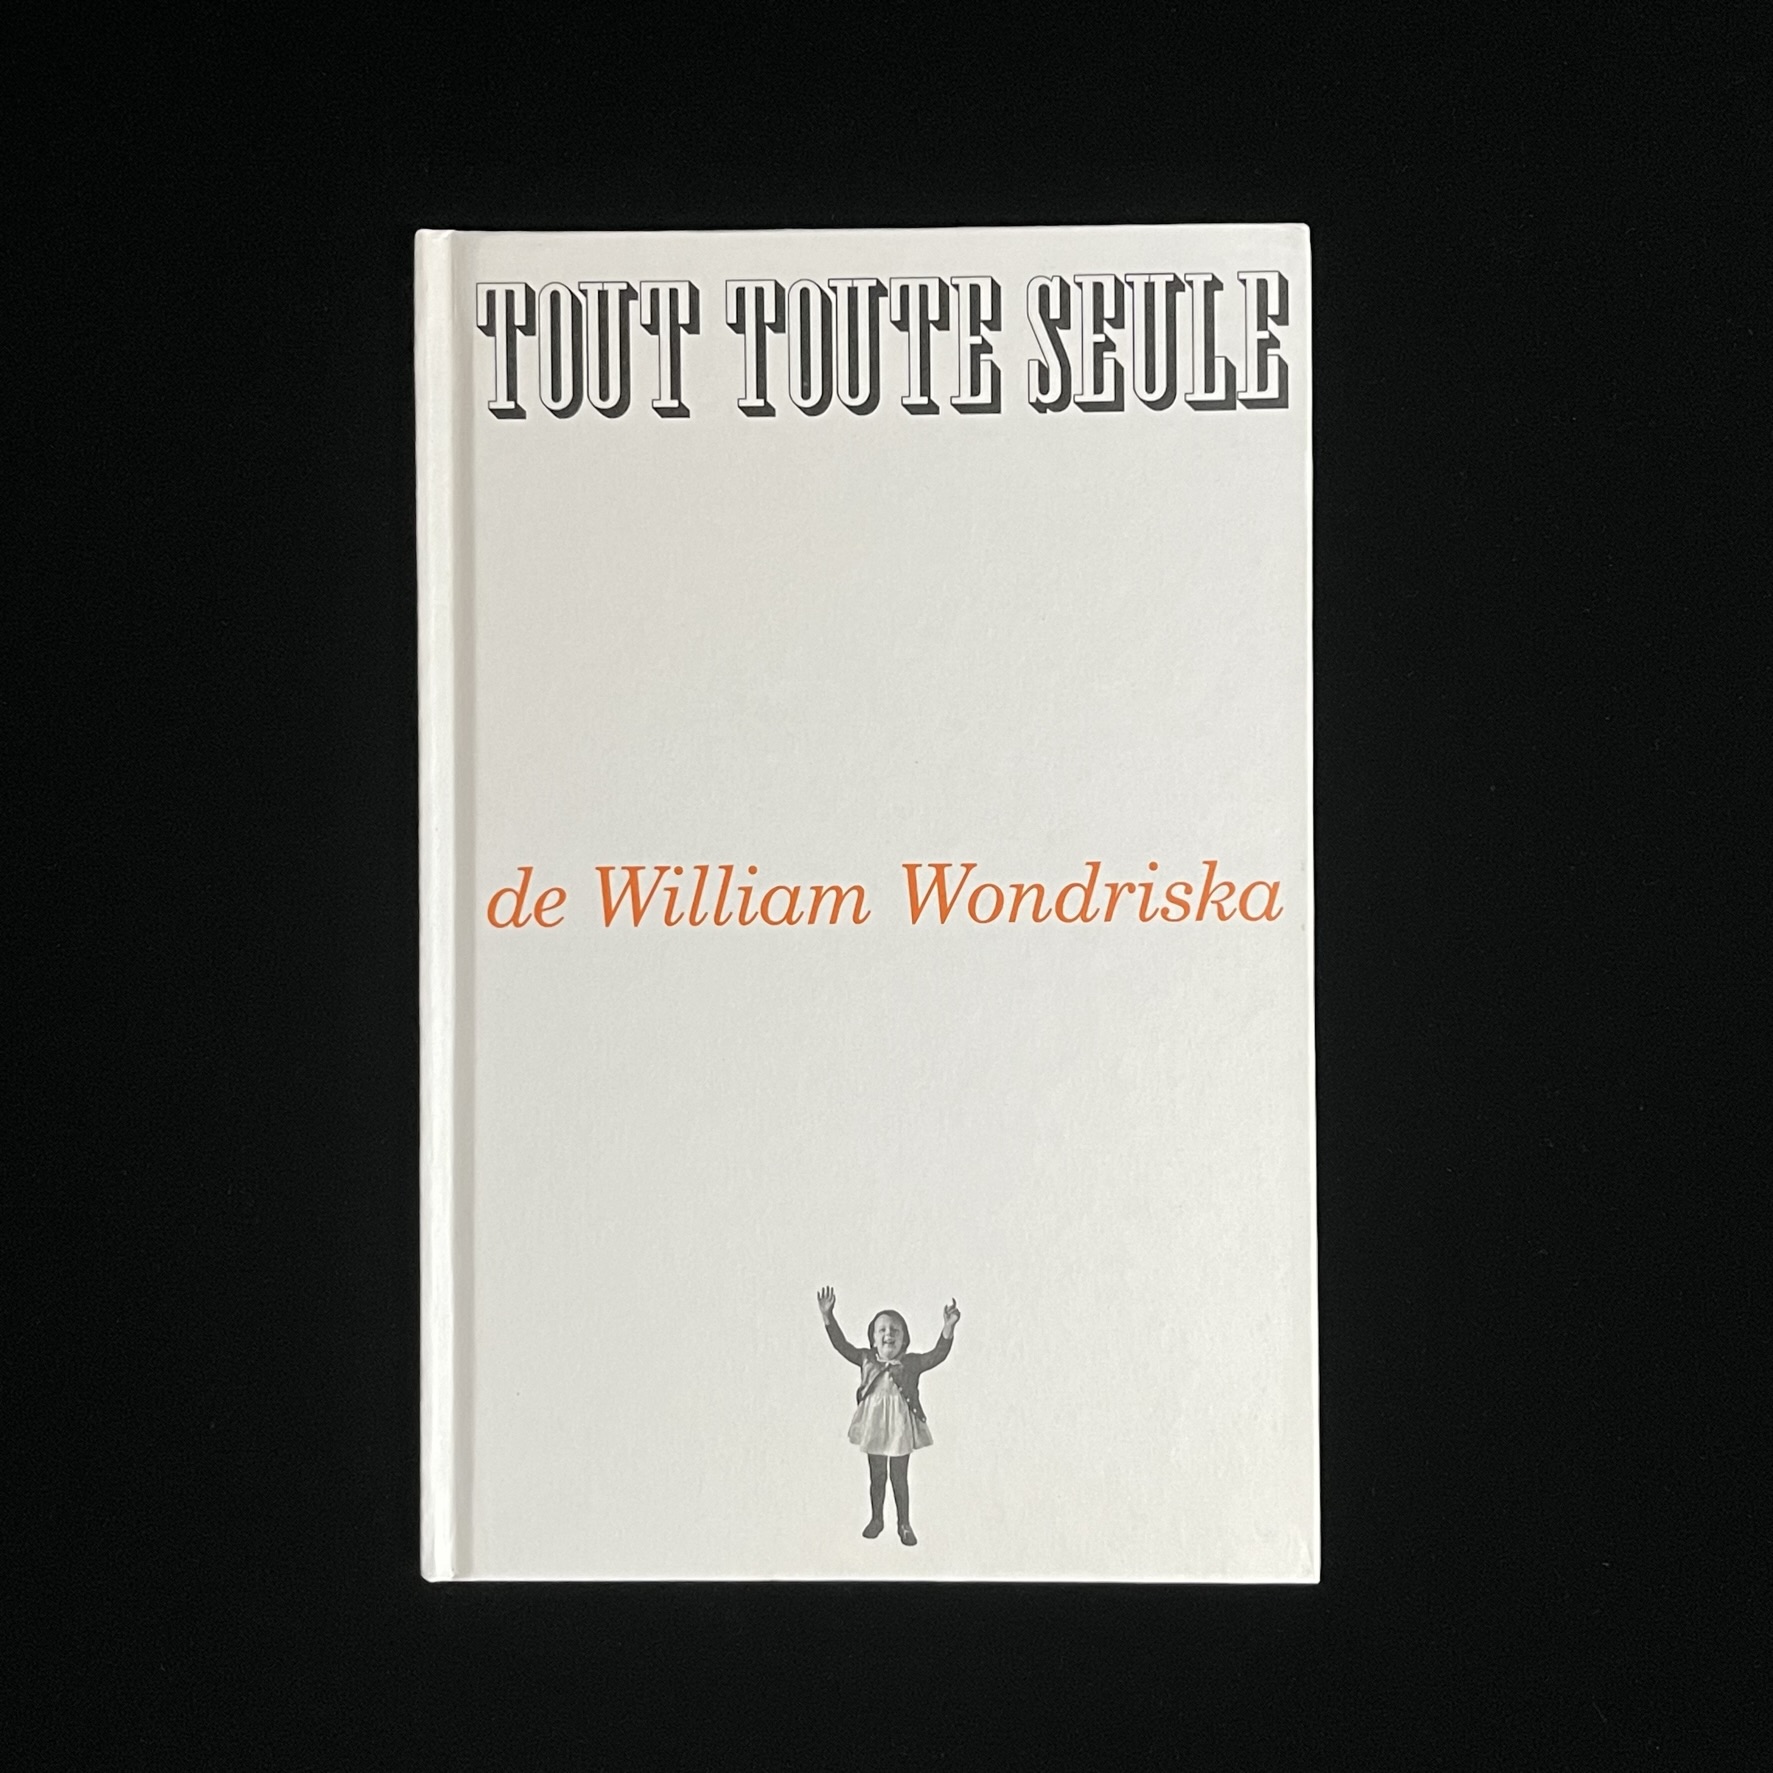 ウィリアム・ワンドリスカさんの「TOUT TOUTE SEULE」の絵本の表紙の写真。白い表紙にタイトルと著者名と女の子の写真のシンプルな構成でお洒落。女の子は笑顔で両手をあげている。